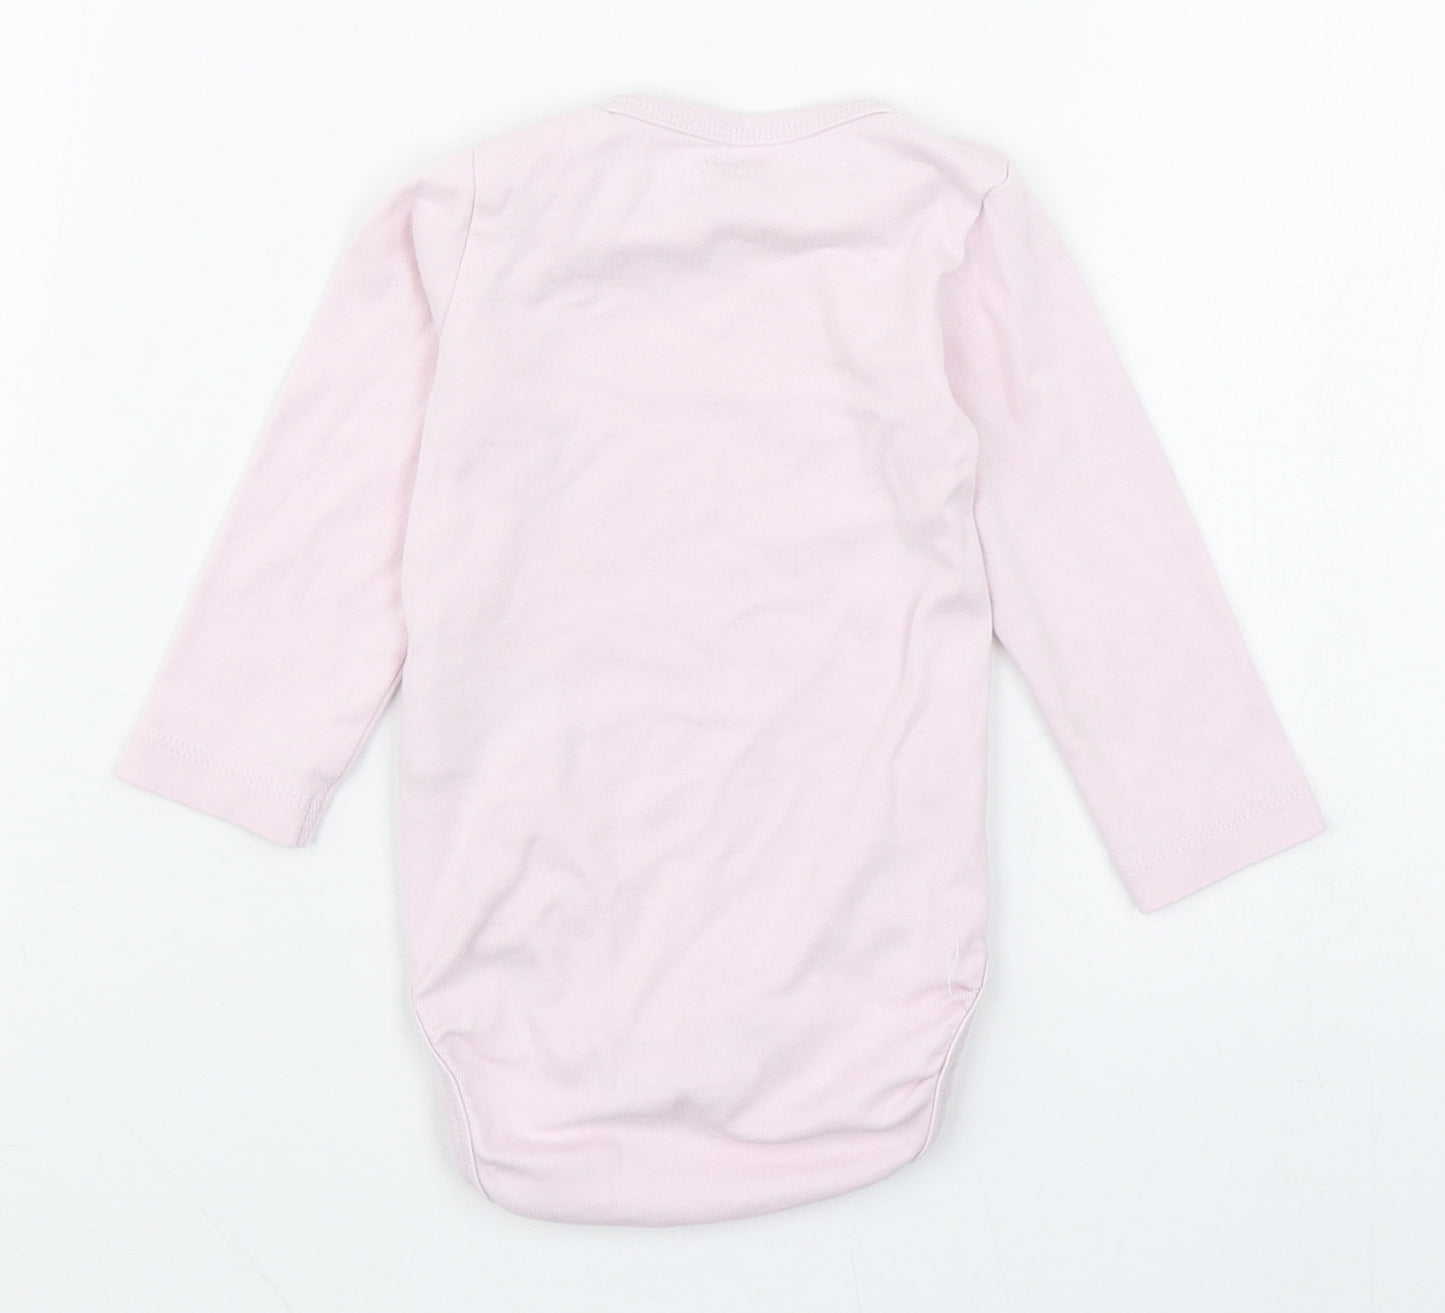 H&M Girls Pink  100% Cotton Babygrow One-Piece Size 6-9 Months  Button